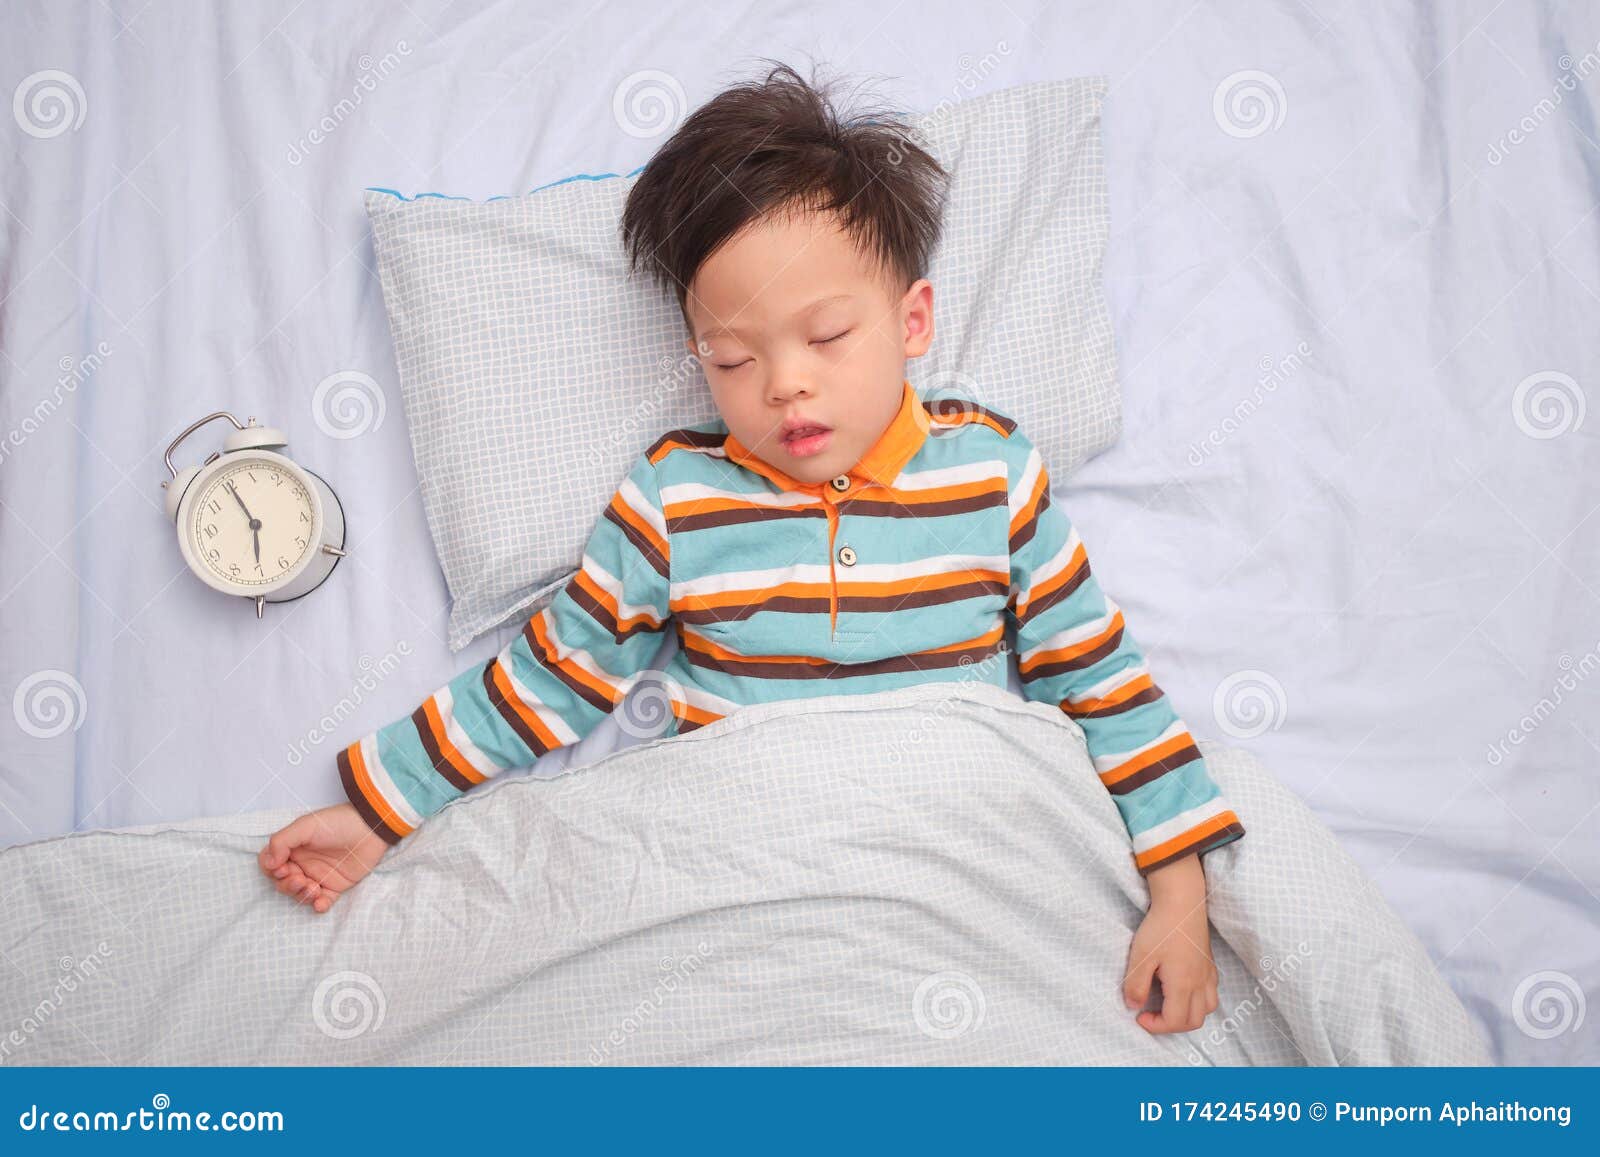 Asiático Niño Pequeño De 3 a 4 Años En Pijama Durmiendo / Tomando